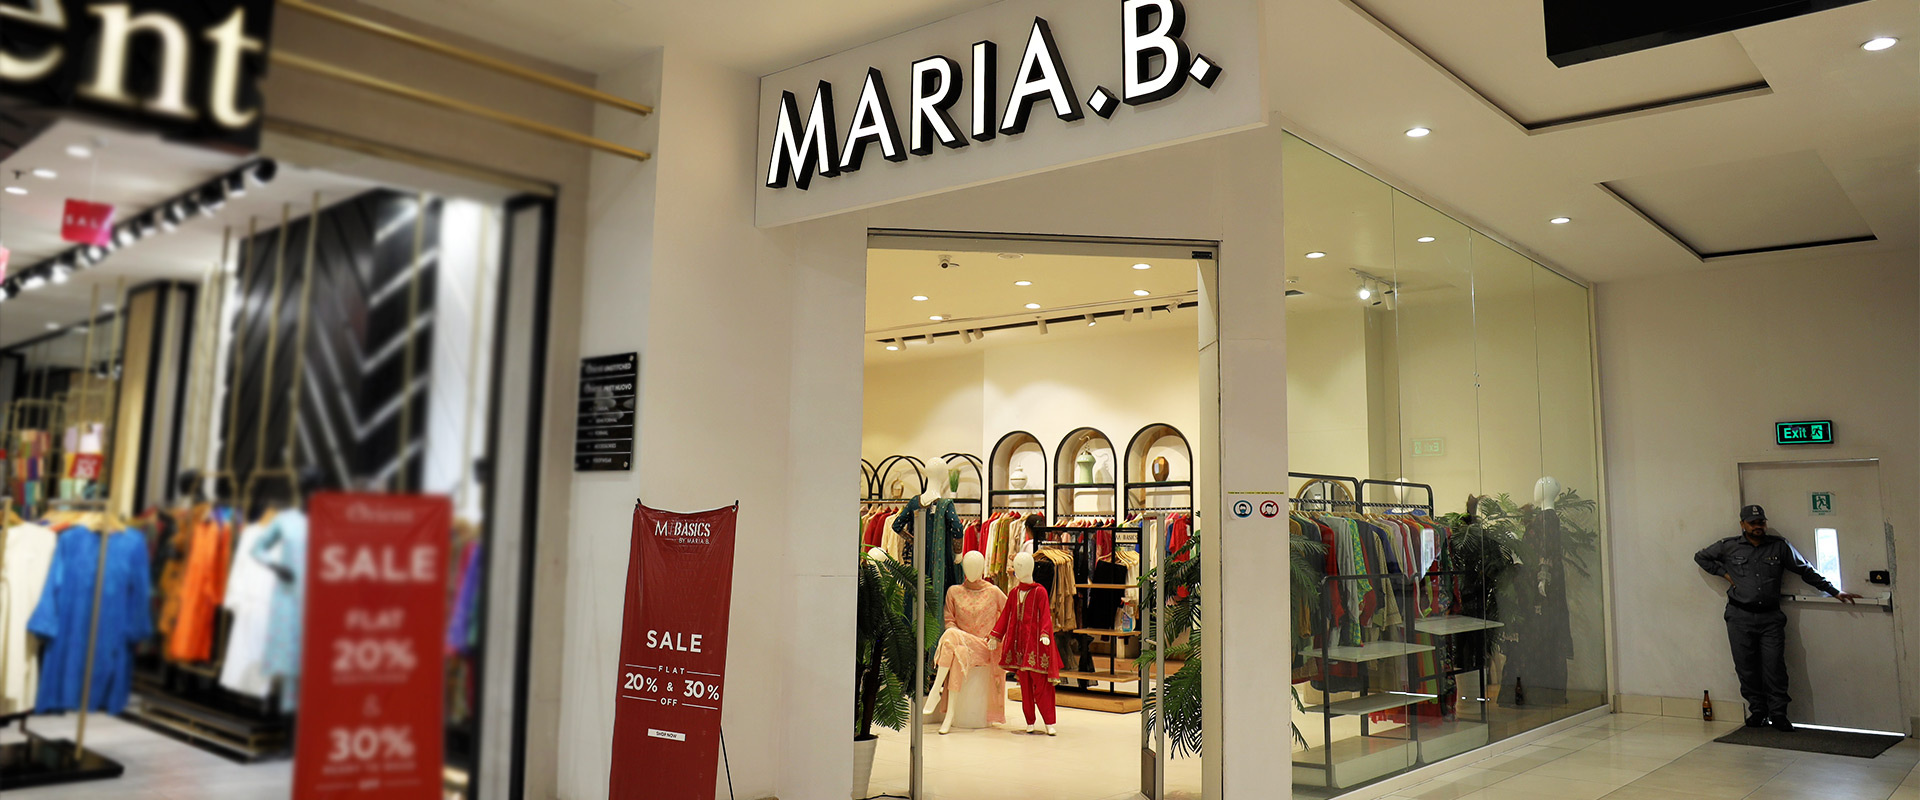 maria-B-1